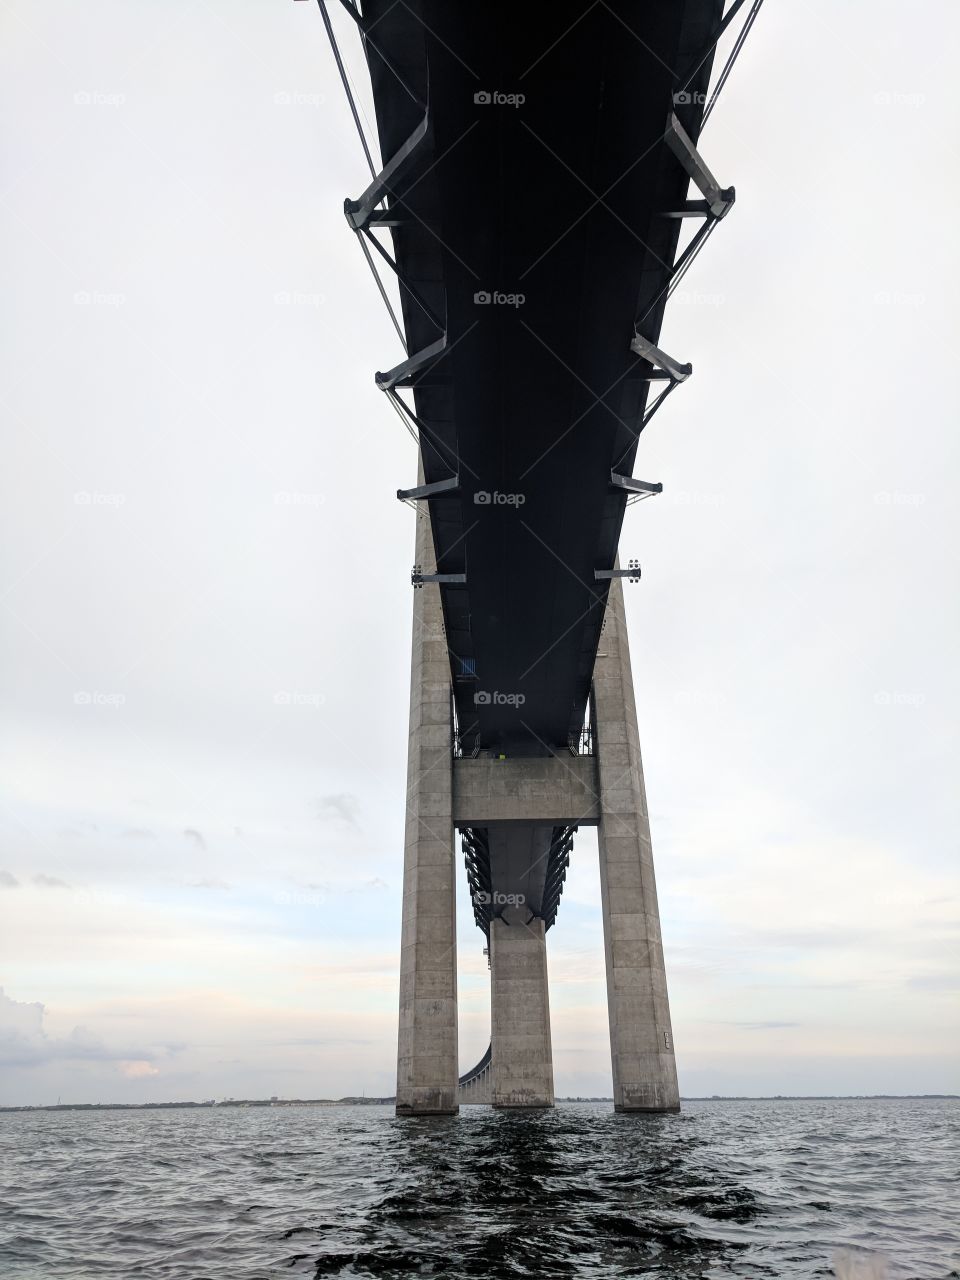 The Öresund bridge (Öresundsbron) shot from water level